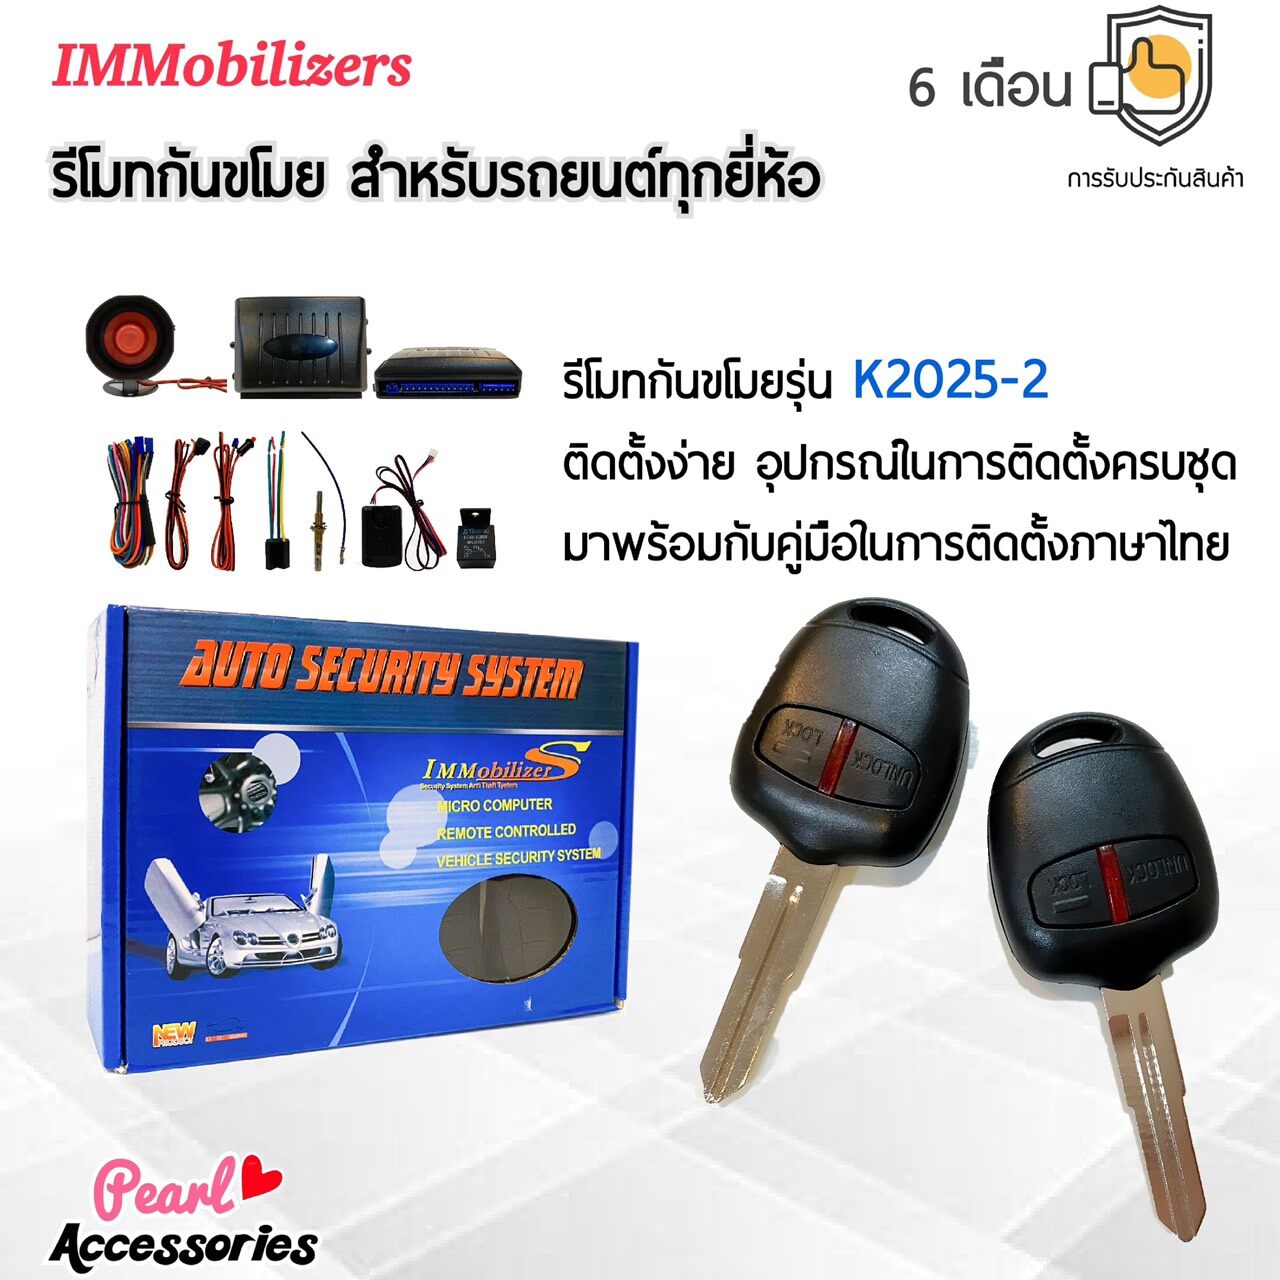 Immobilizers รีโมทกันขโมย K2025 กุญแจทรง Mitsubishi เก๋ง สำหรับรถยนต์ทุกยี่ห้อ อุปกรณ์ในการติดตั้งครบชุด (คู่มือในการติดตั้งภาษาไทย) Auto security system